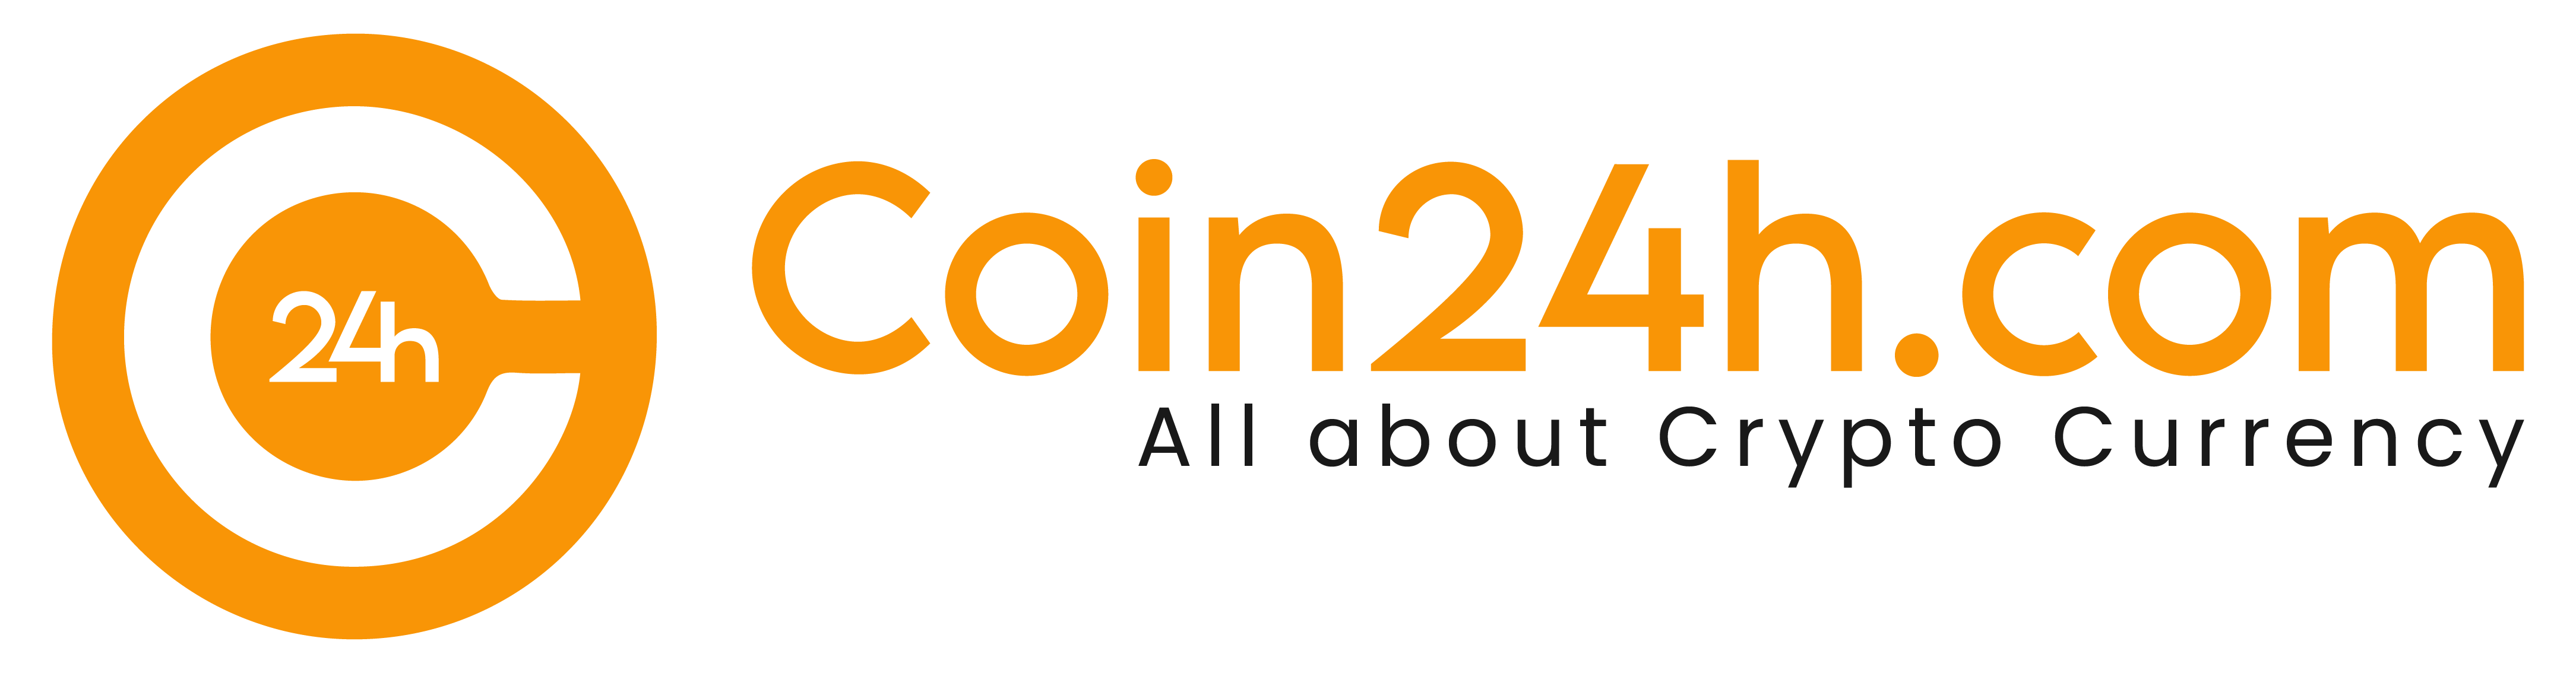 Coin24h.com